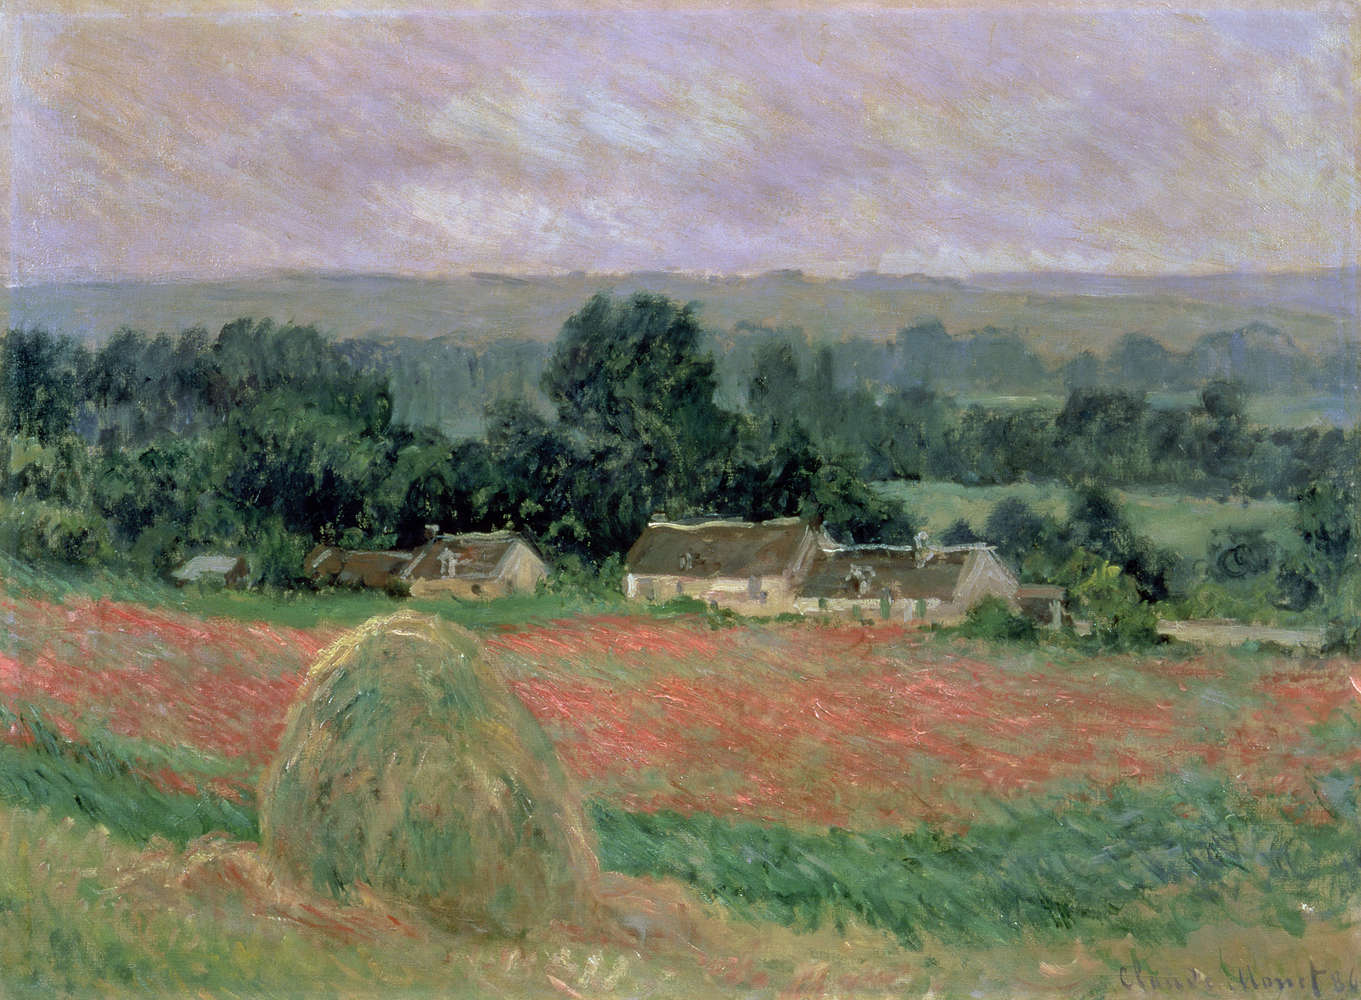             Fototapete "Heuhaufen in Giverny" von Claude Monet
        